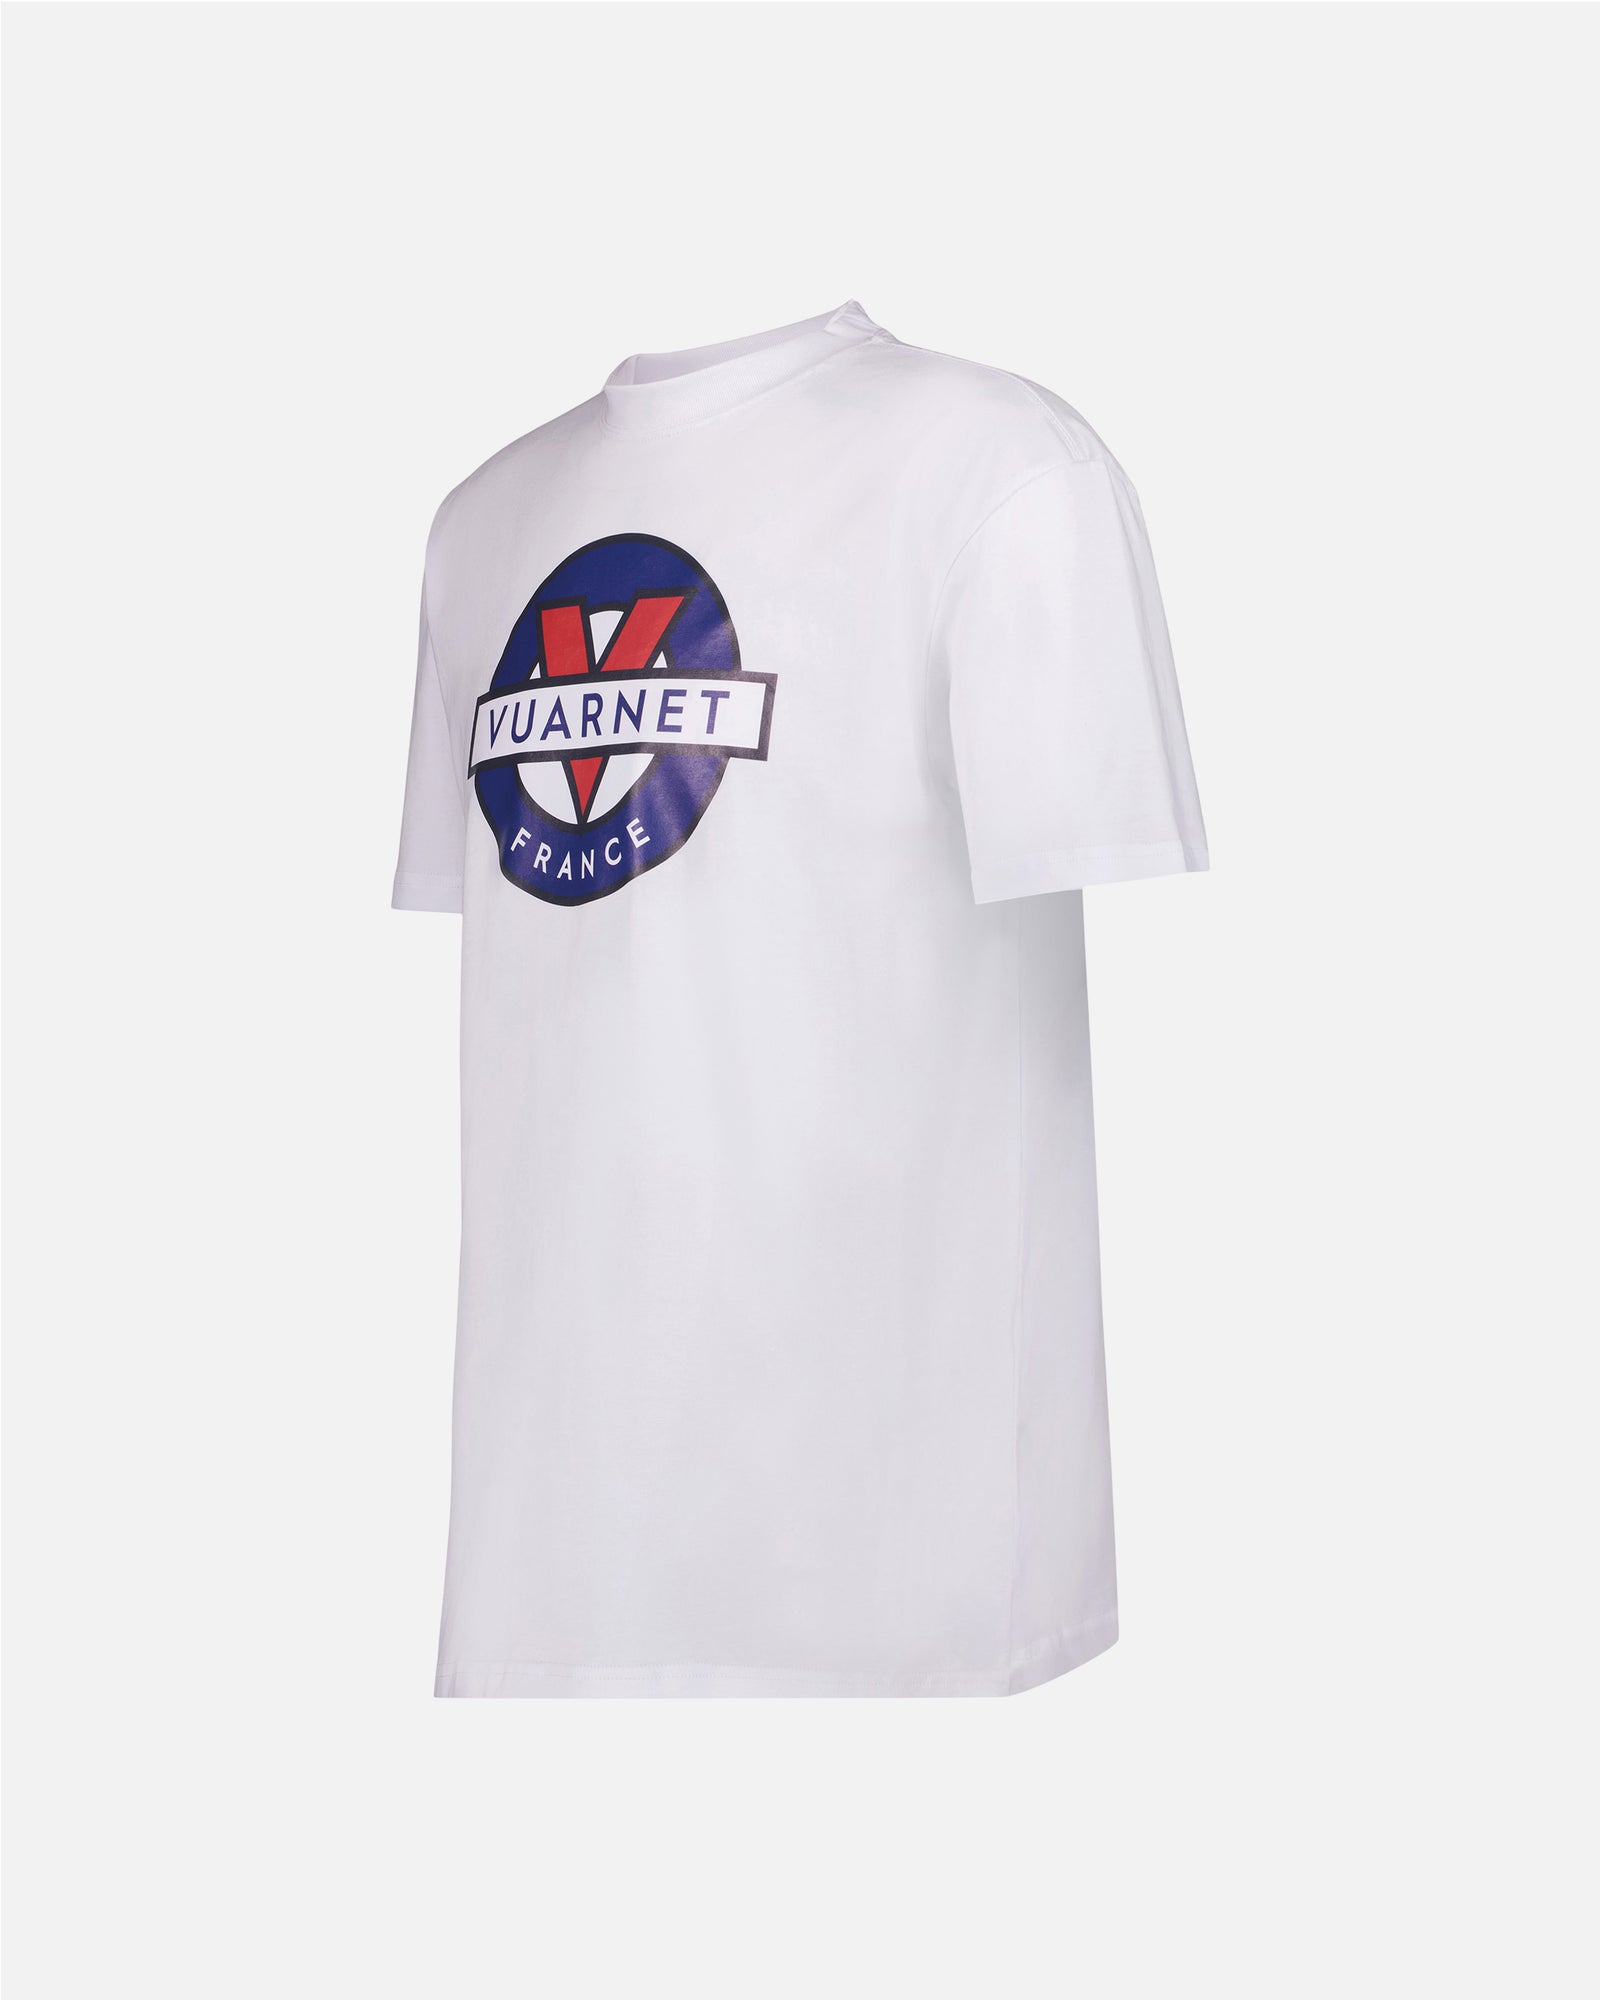 Vuarnet Logo T-shirt - Final Sale